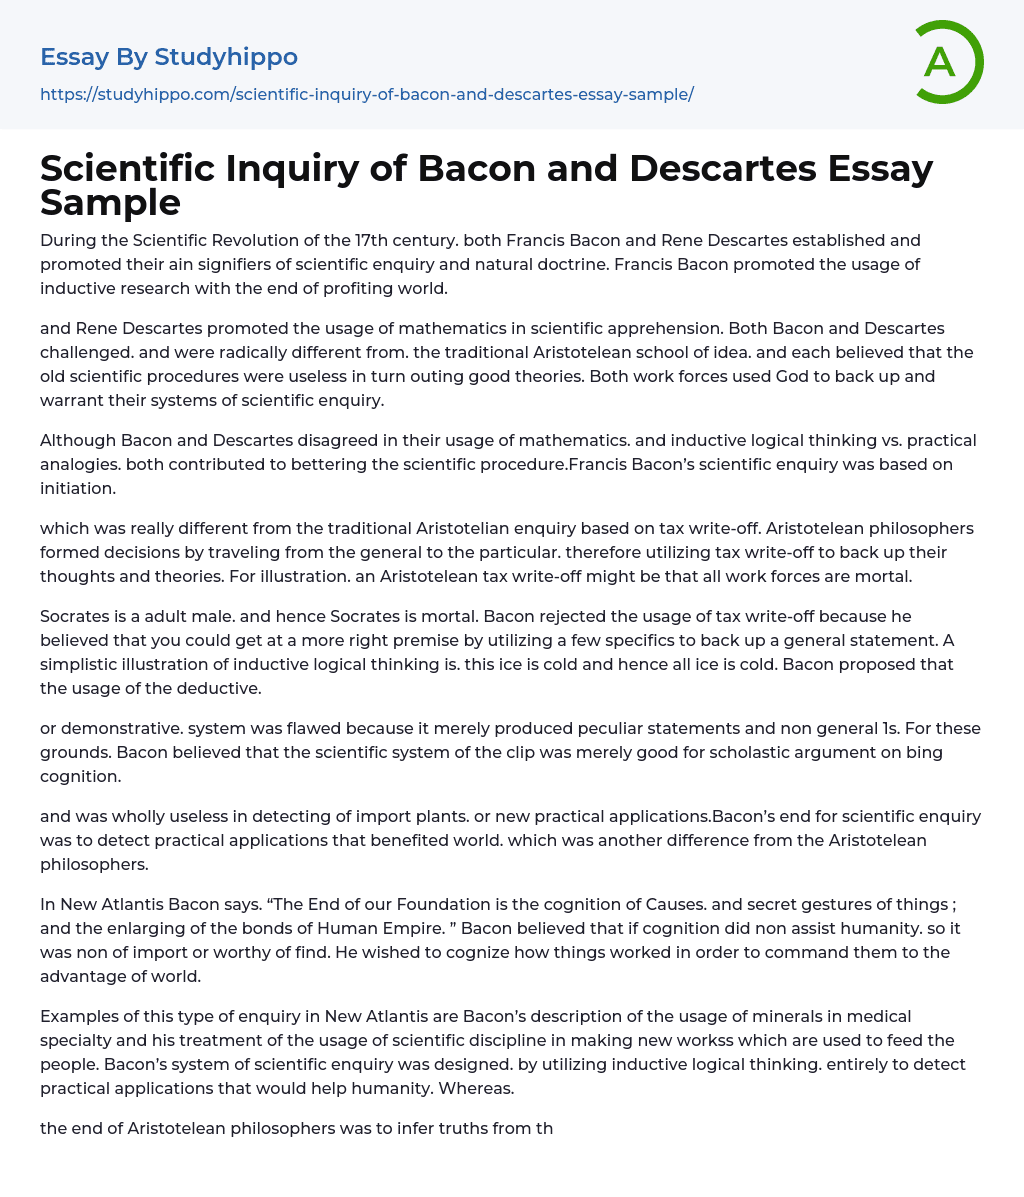 Scientific Inquiry of Bacon and Descartes Essay Sample